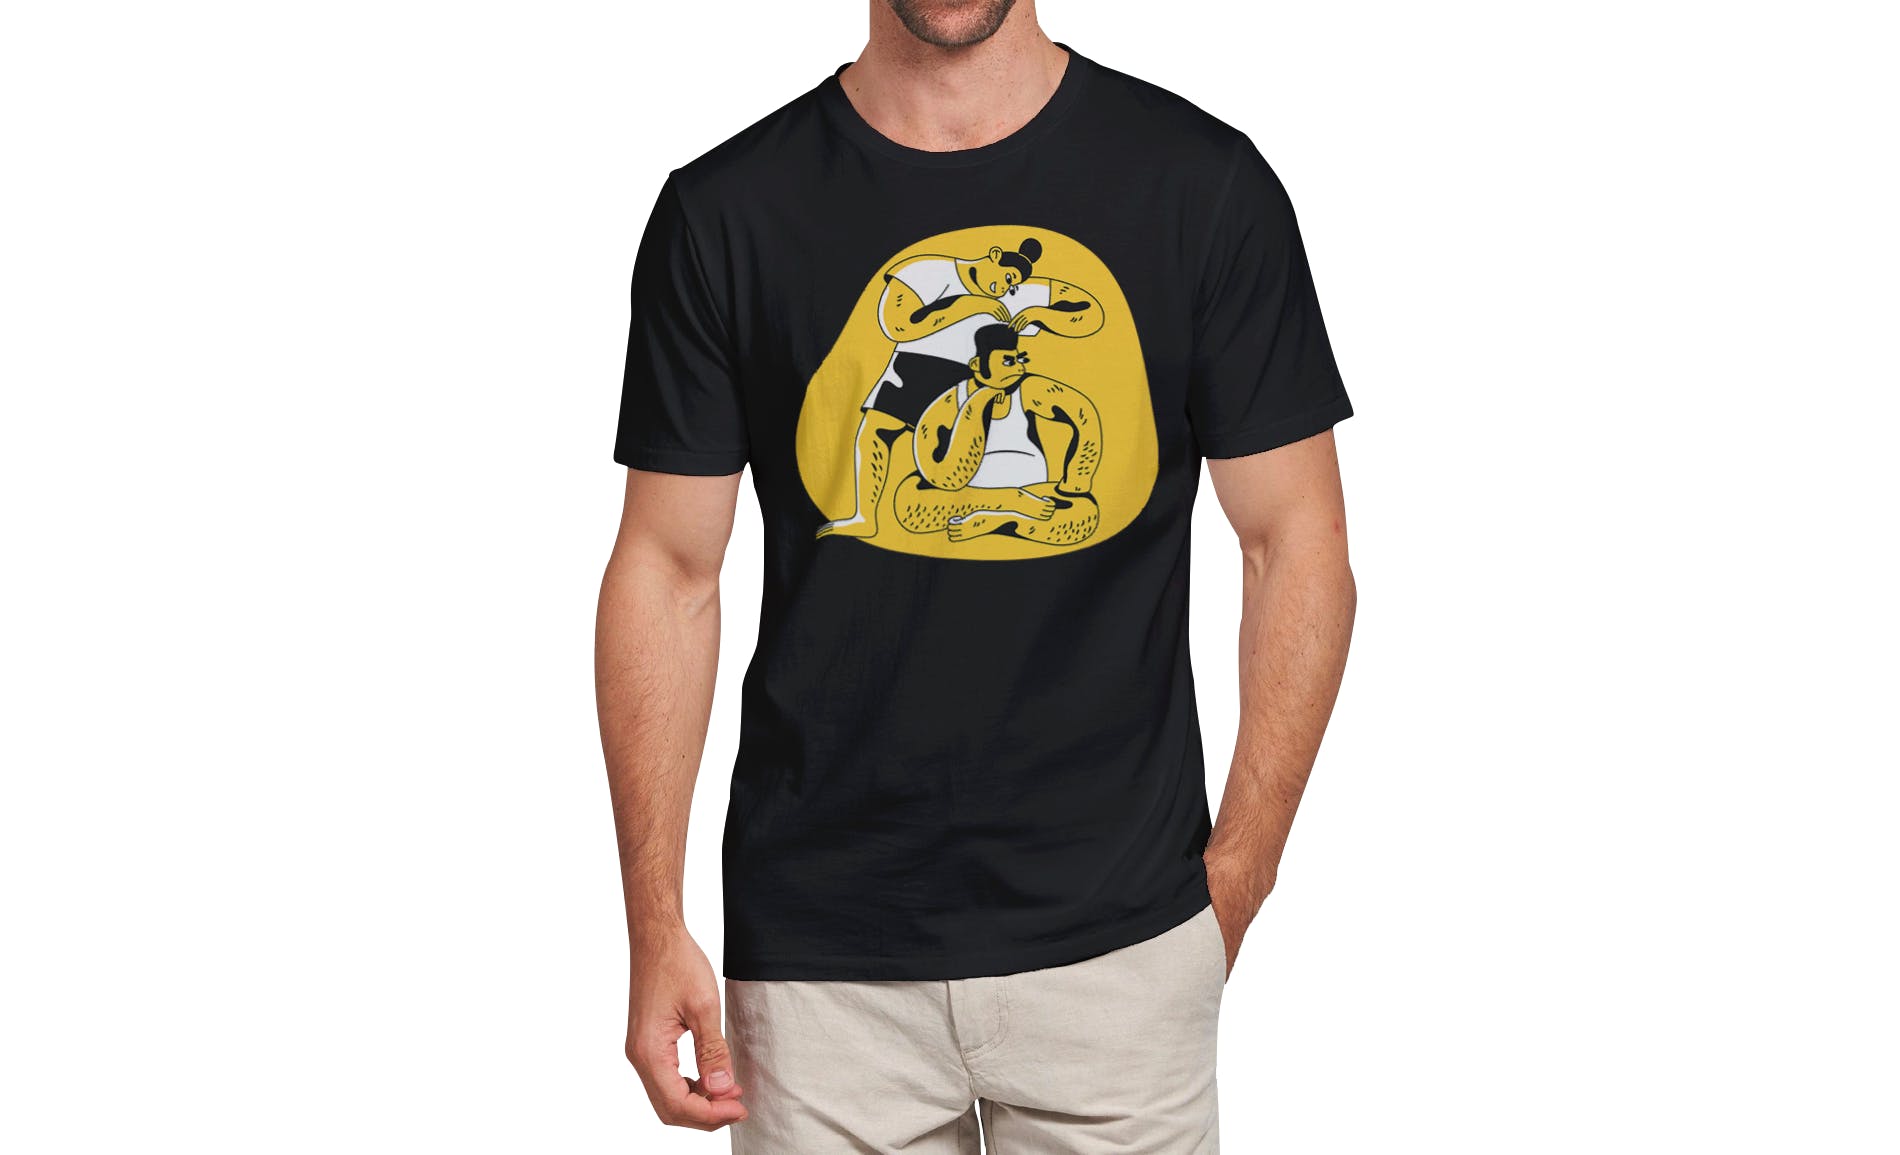 男士T恤印花设计效果图样机大洋岛精选v03 T-shirt Mockup Vol 03插图8